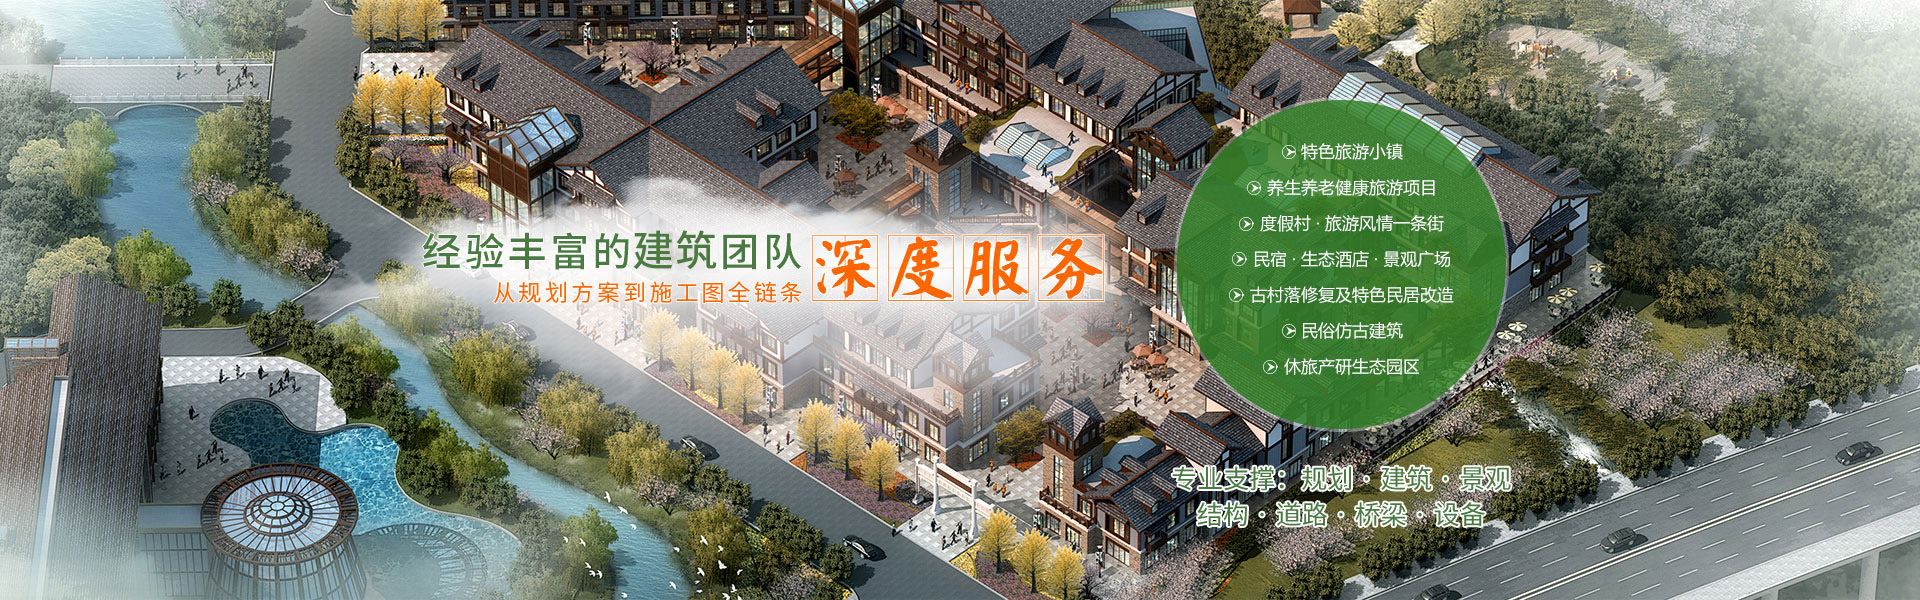 重慶旅游規劃設計